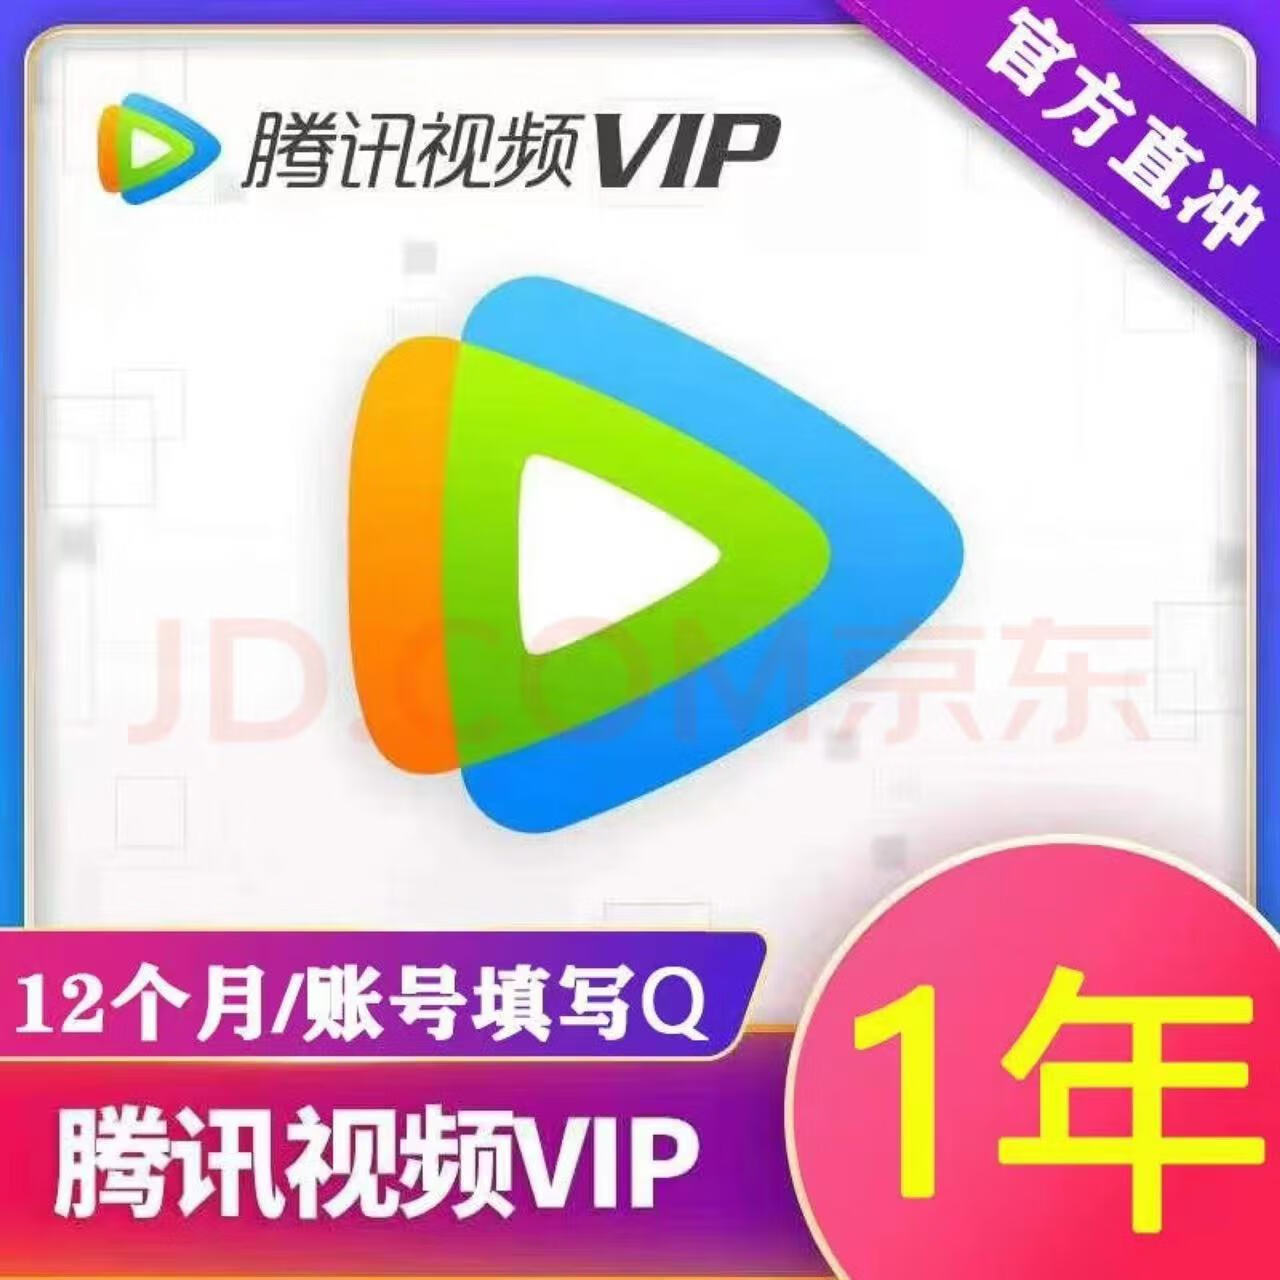 Tencent Video 腾讯视频 会员年卡  120元 （需用券）